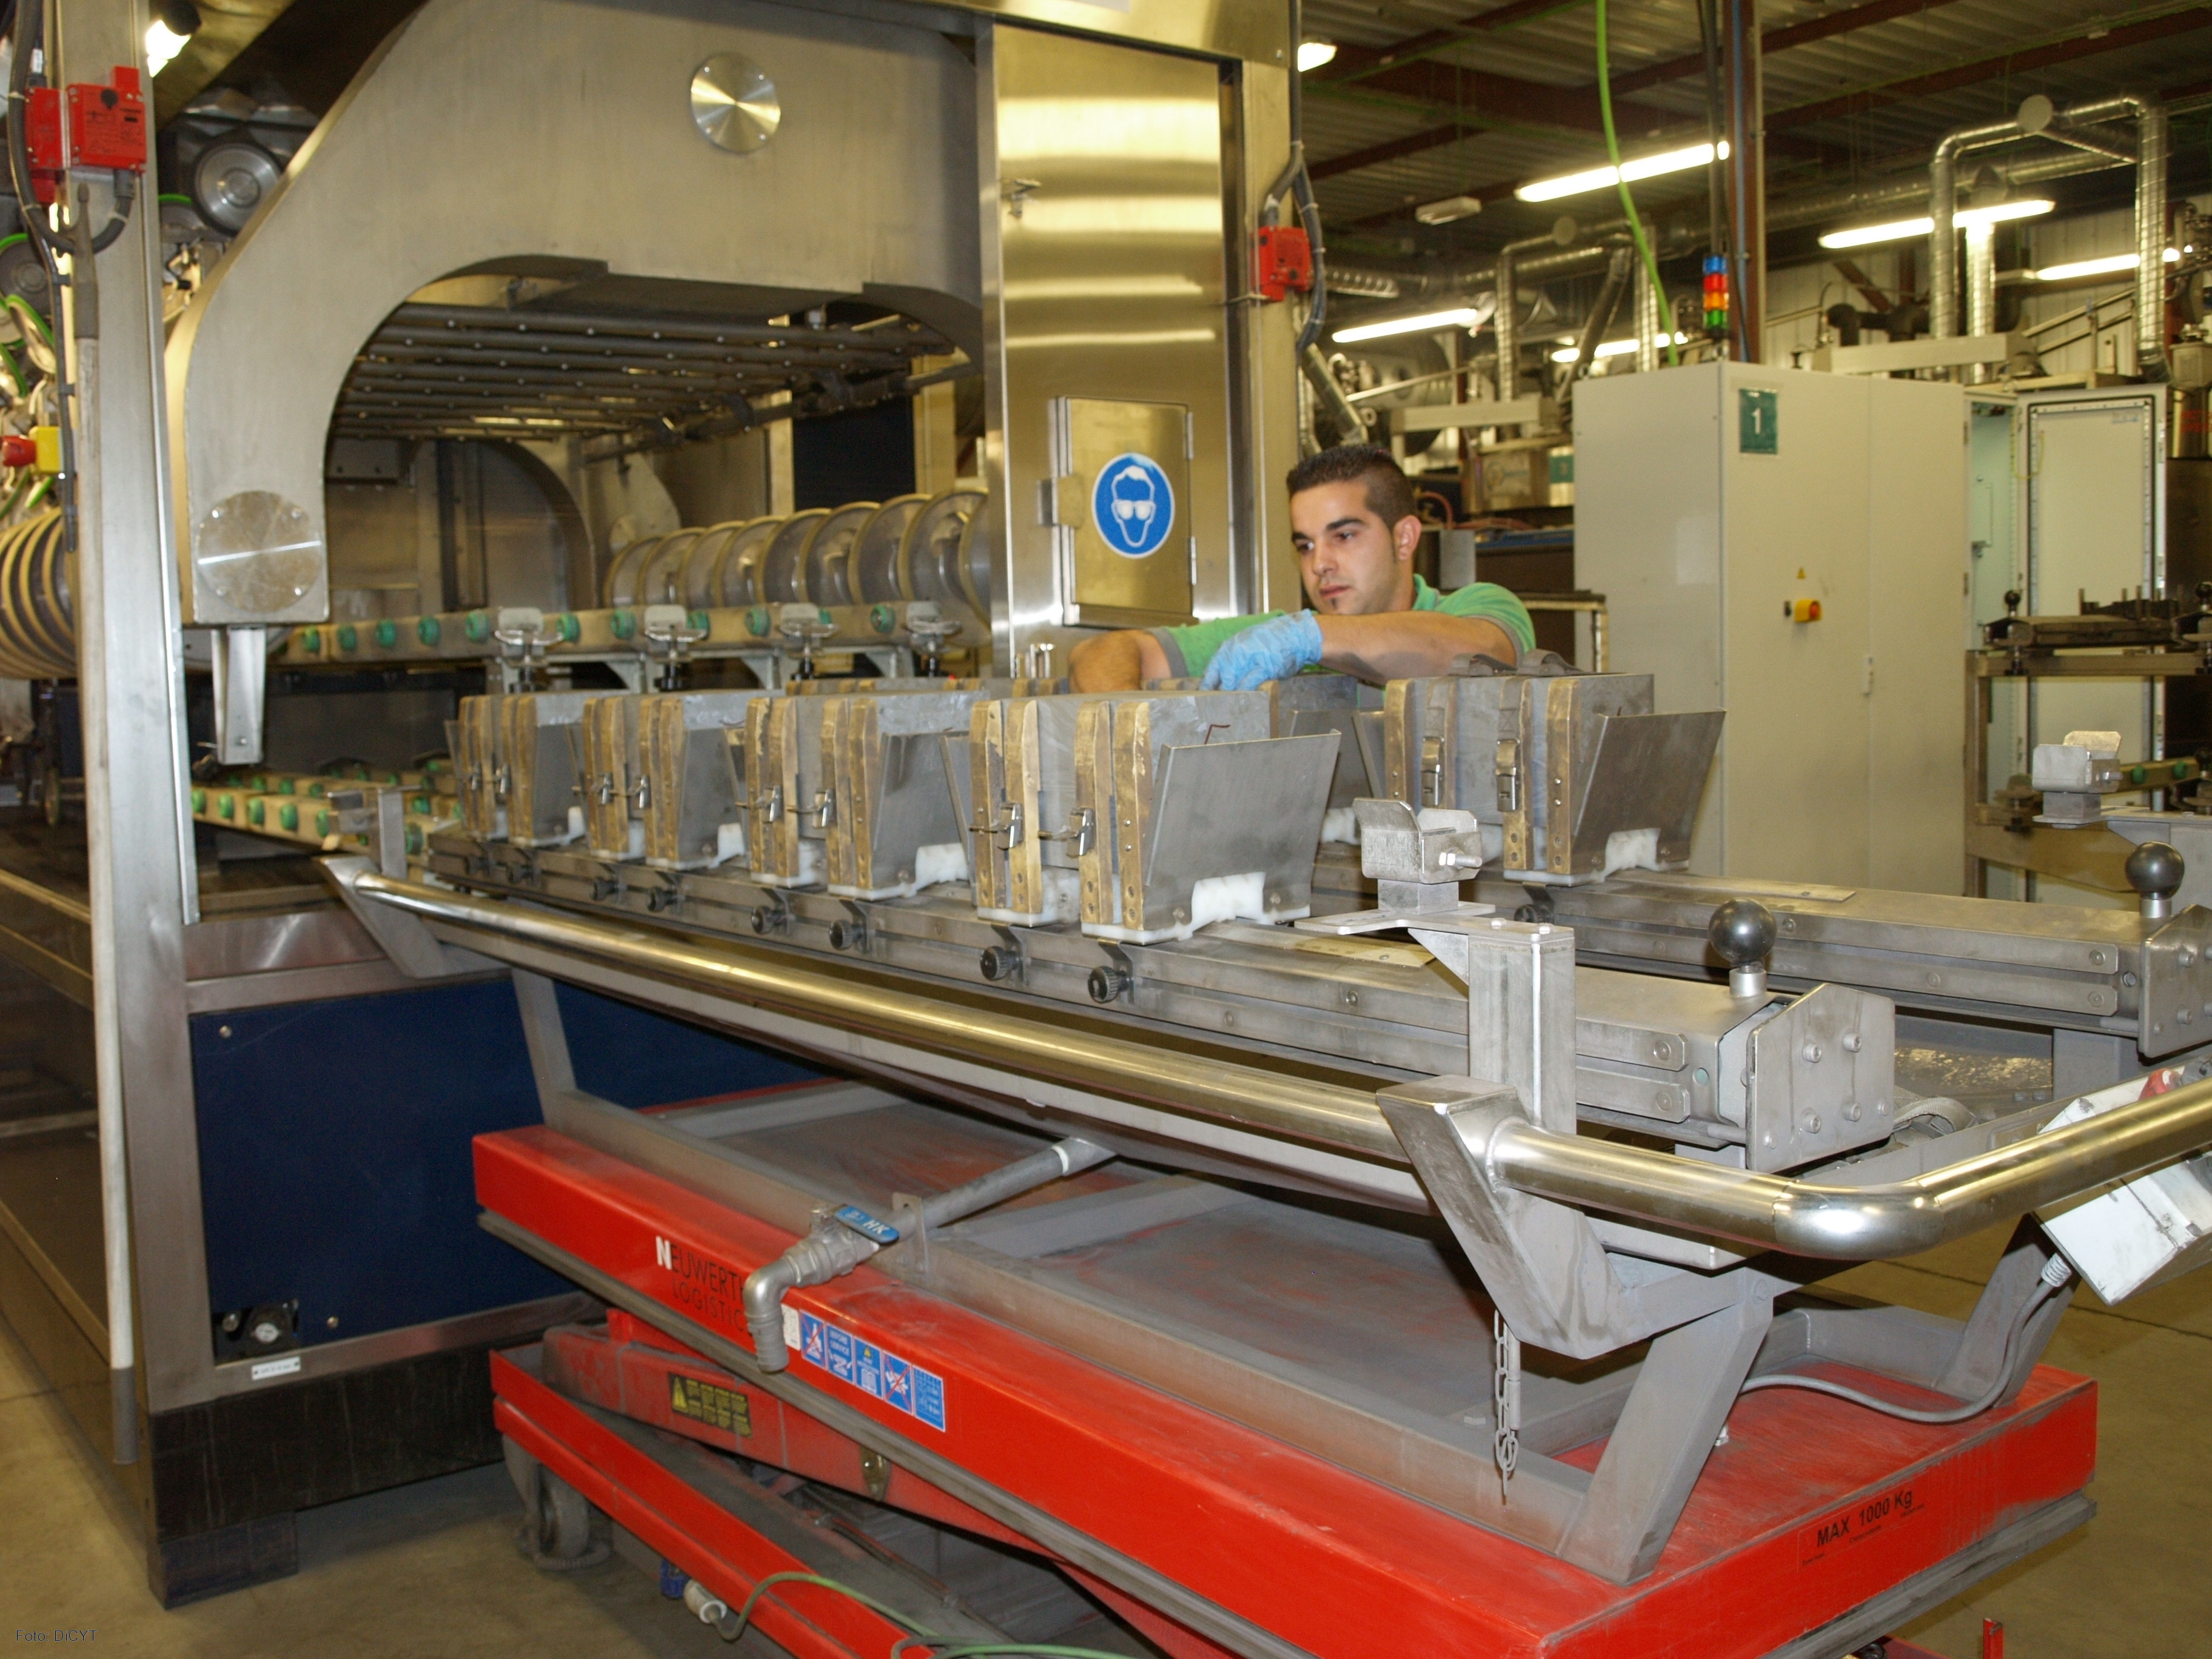 Un operario de la empresa DC Wafers trabaja en la planta de producción de Valdelafuente (León).